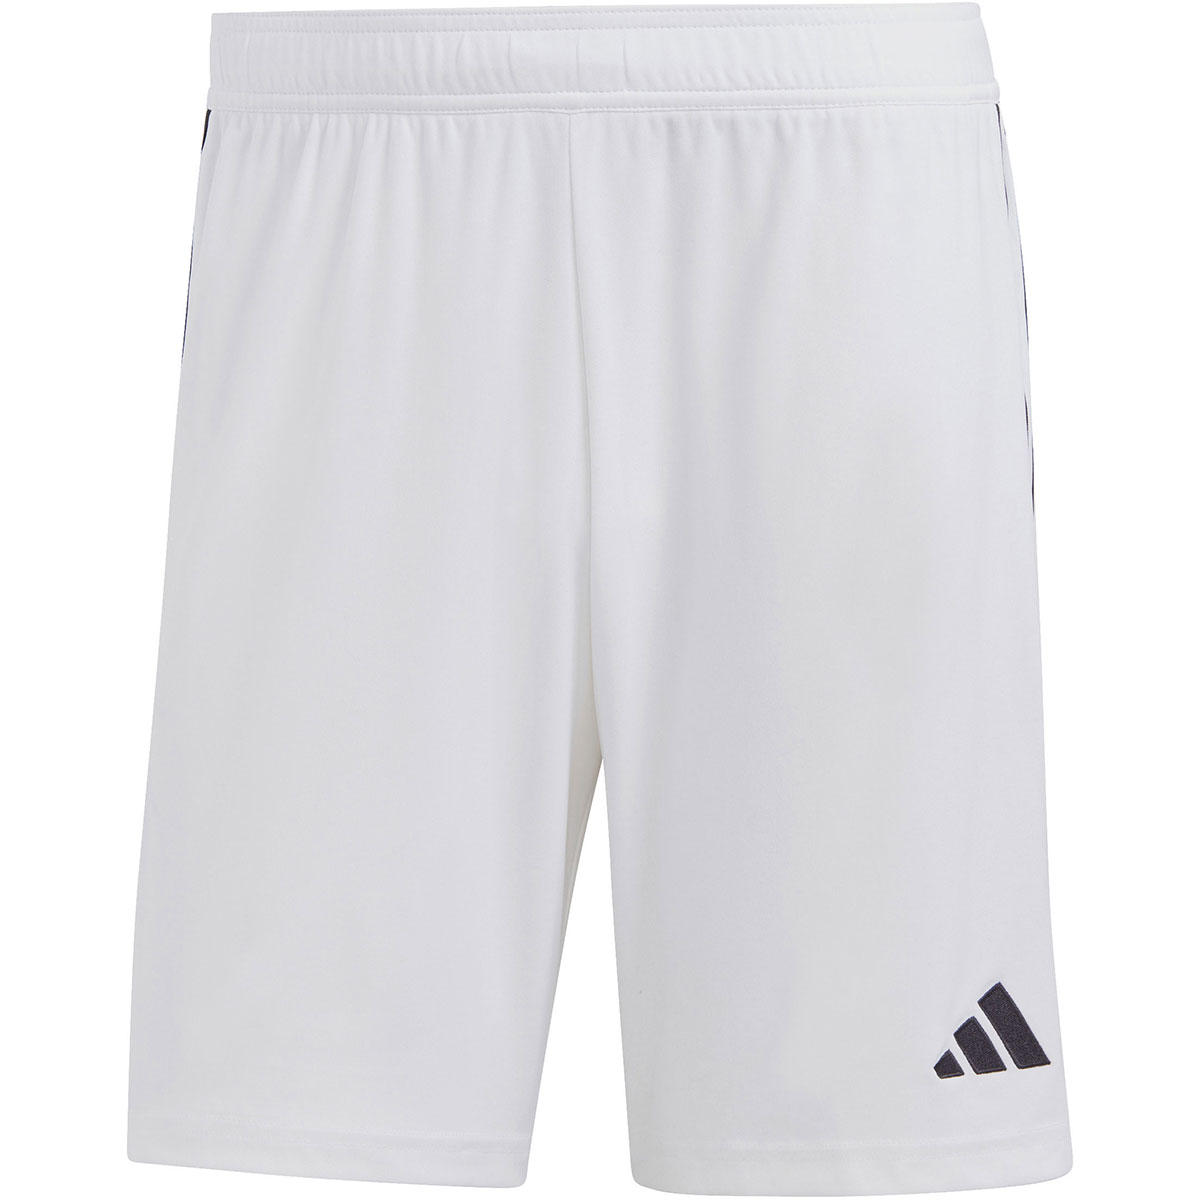 Adidas Herren Shorts Tiro 23 weiß-schwarz